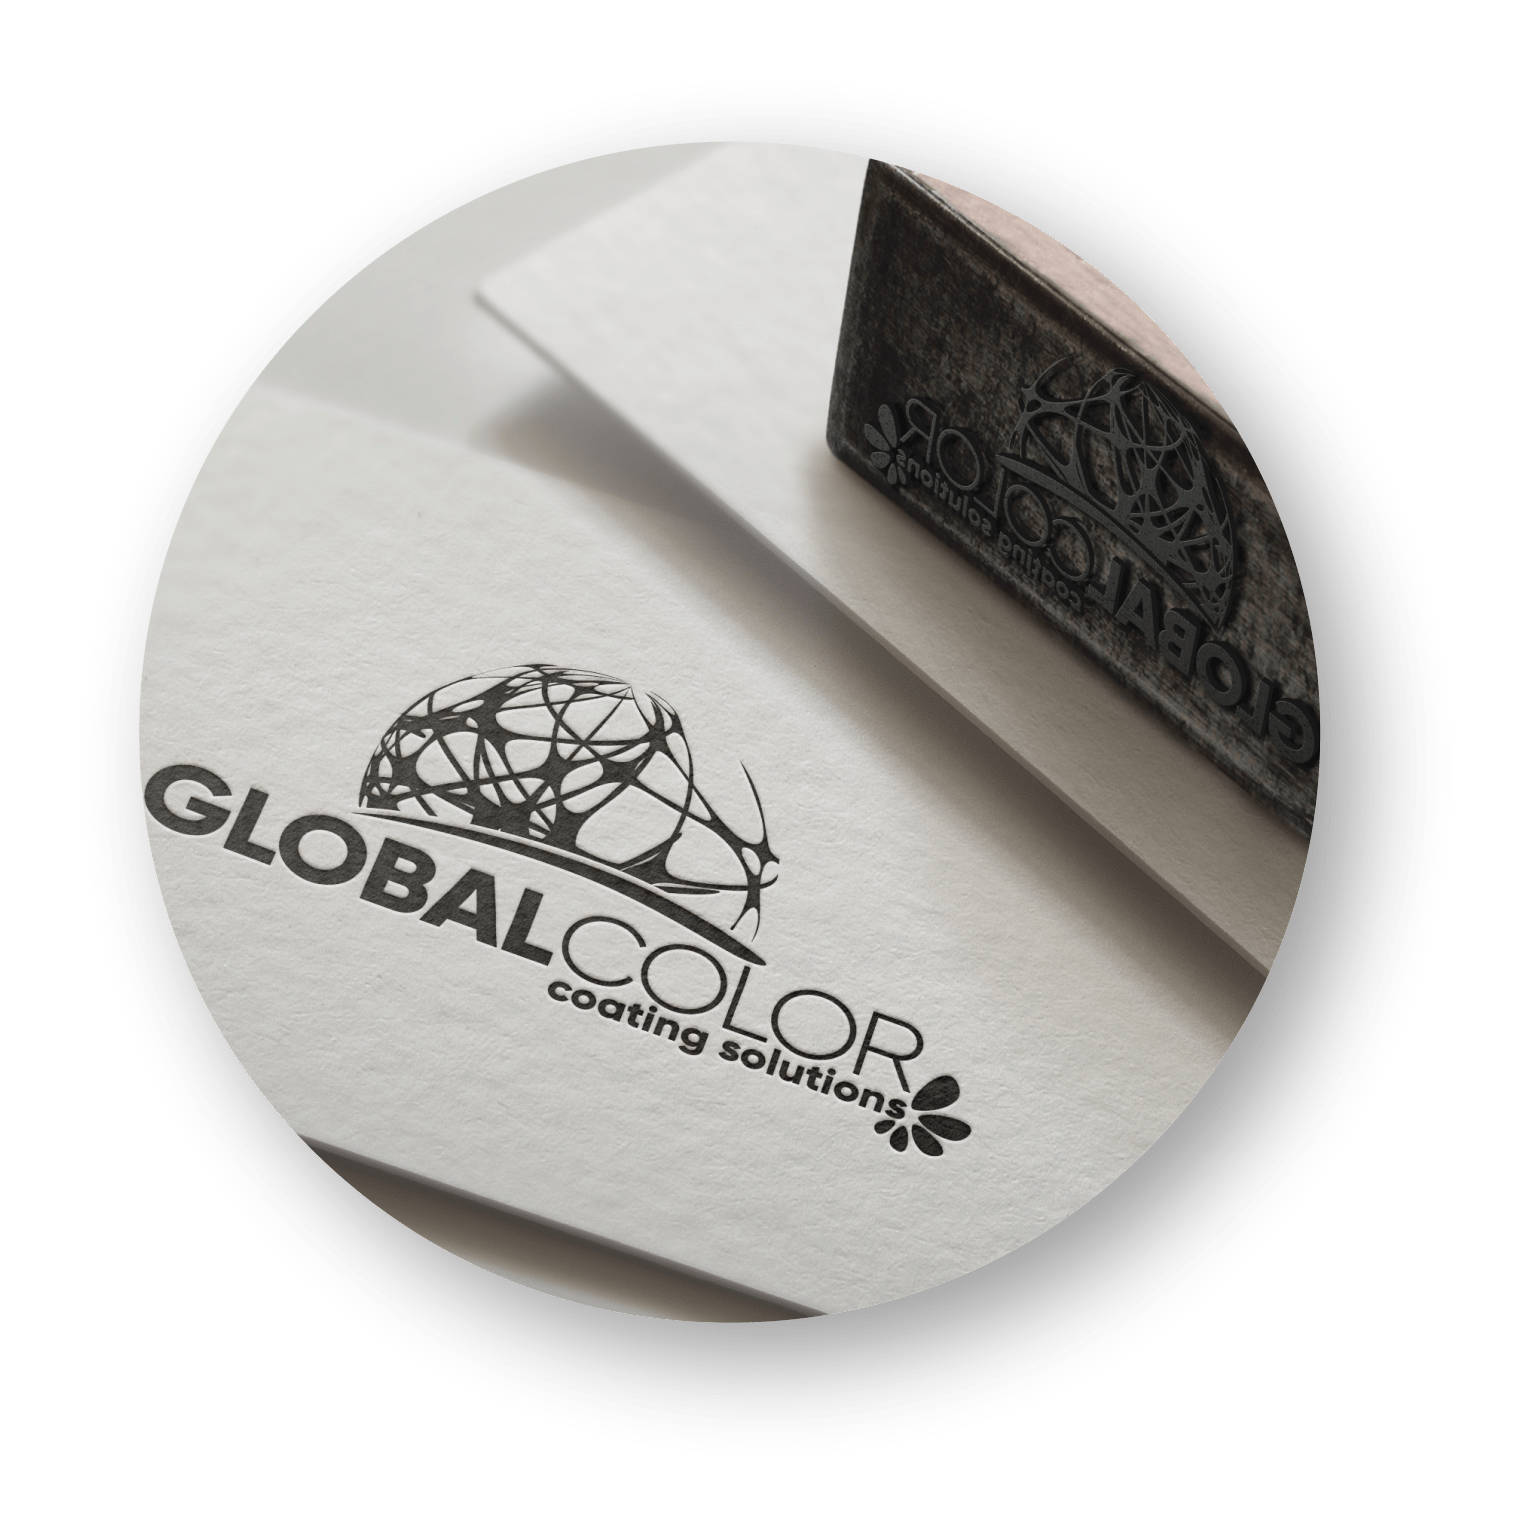 Diretoria Globalcolor